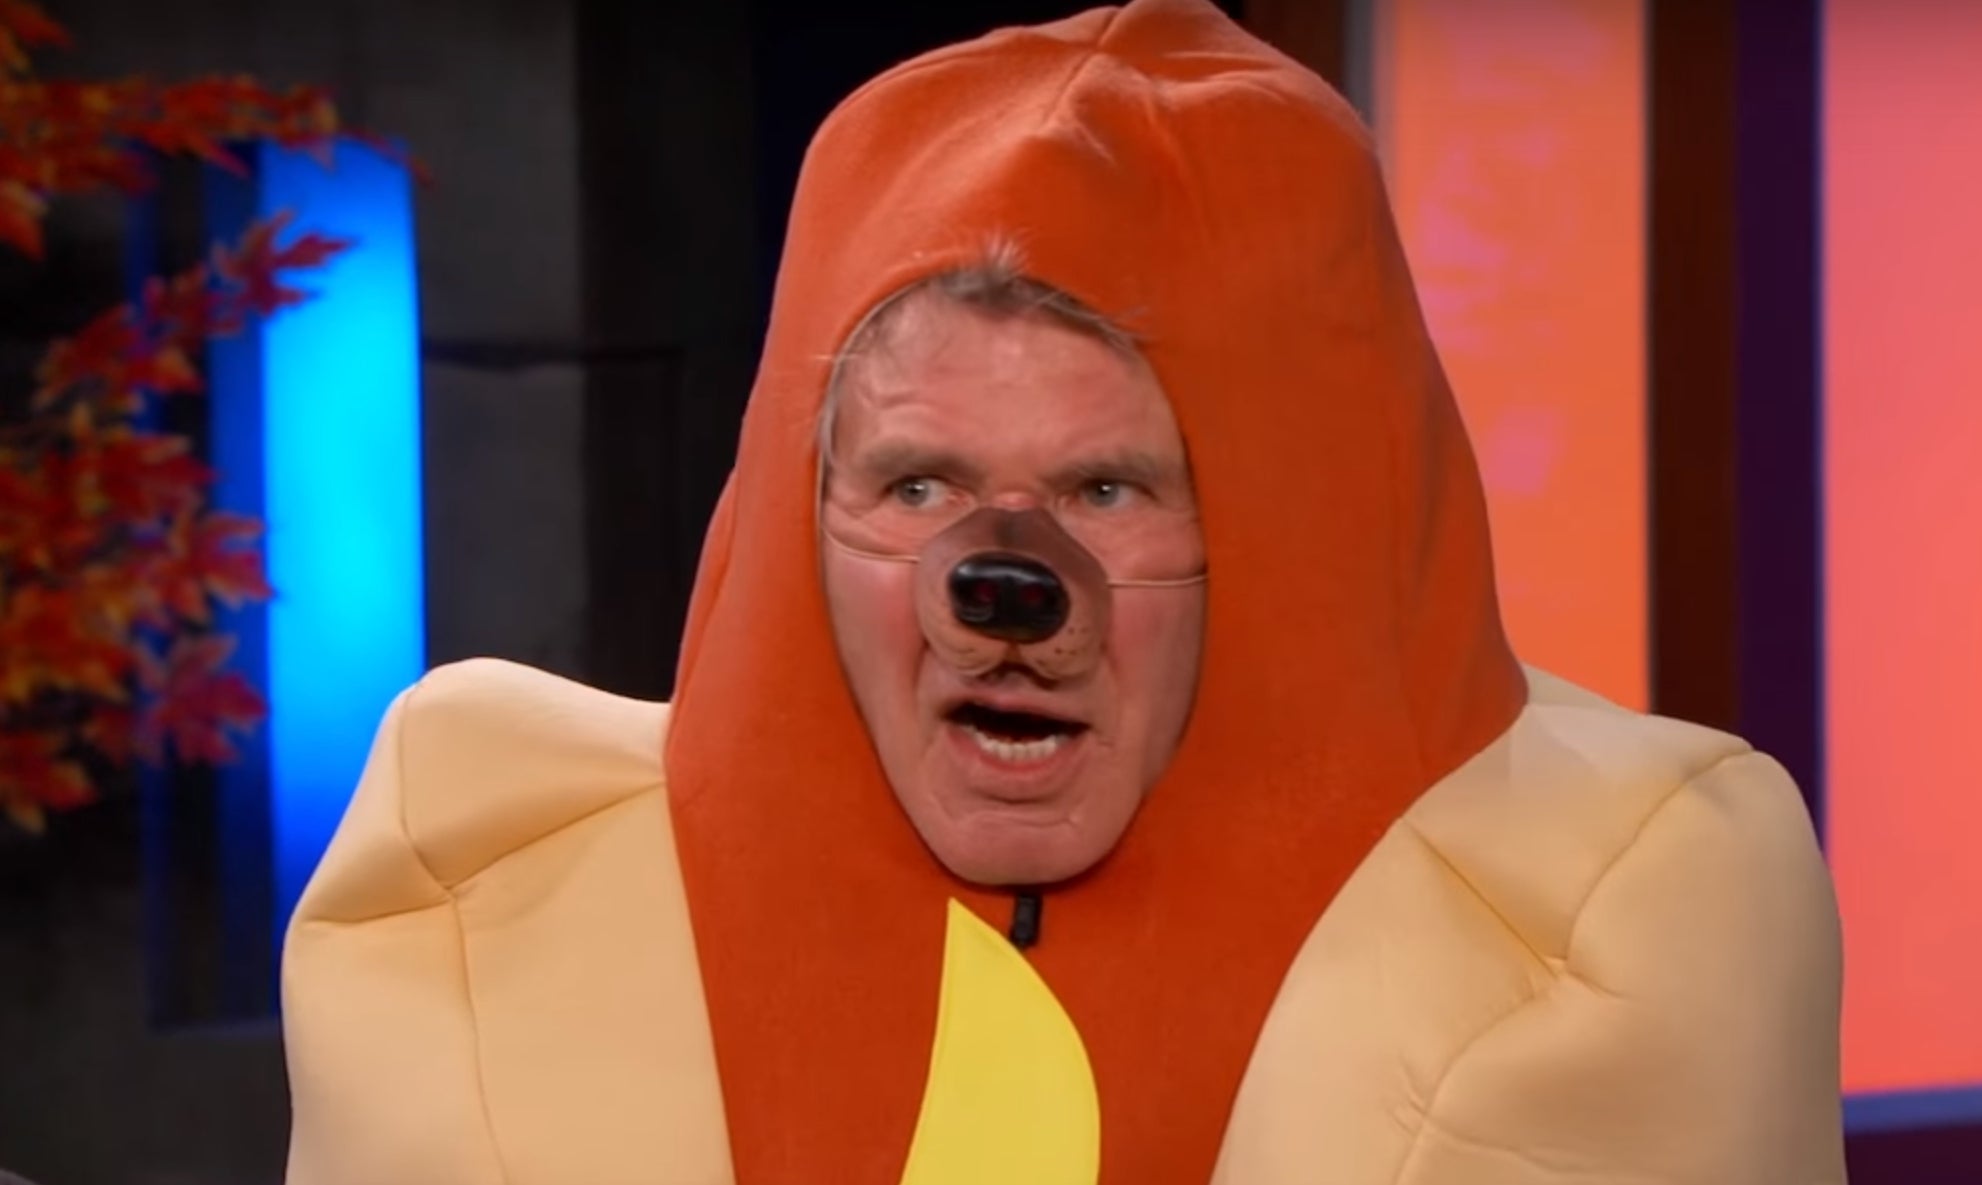 Harrison Ford dressed as a hotdog